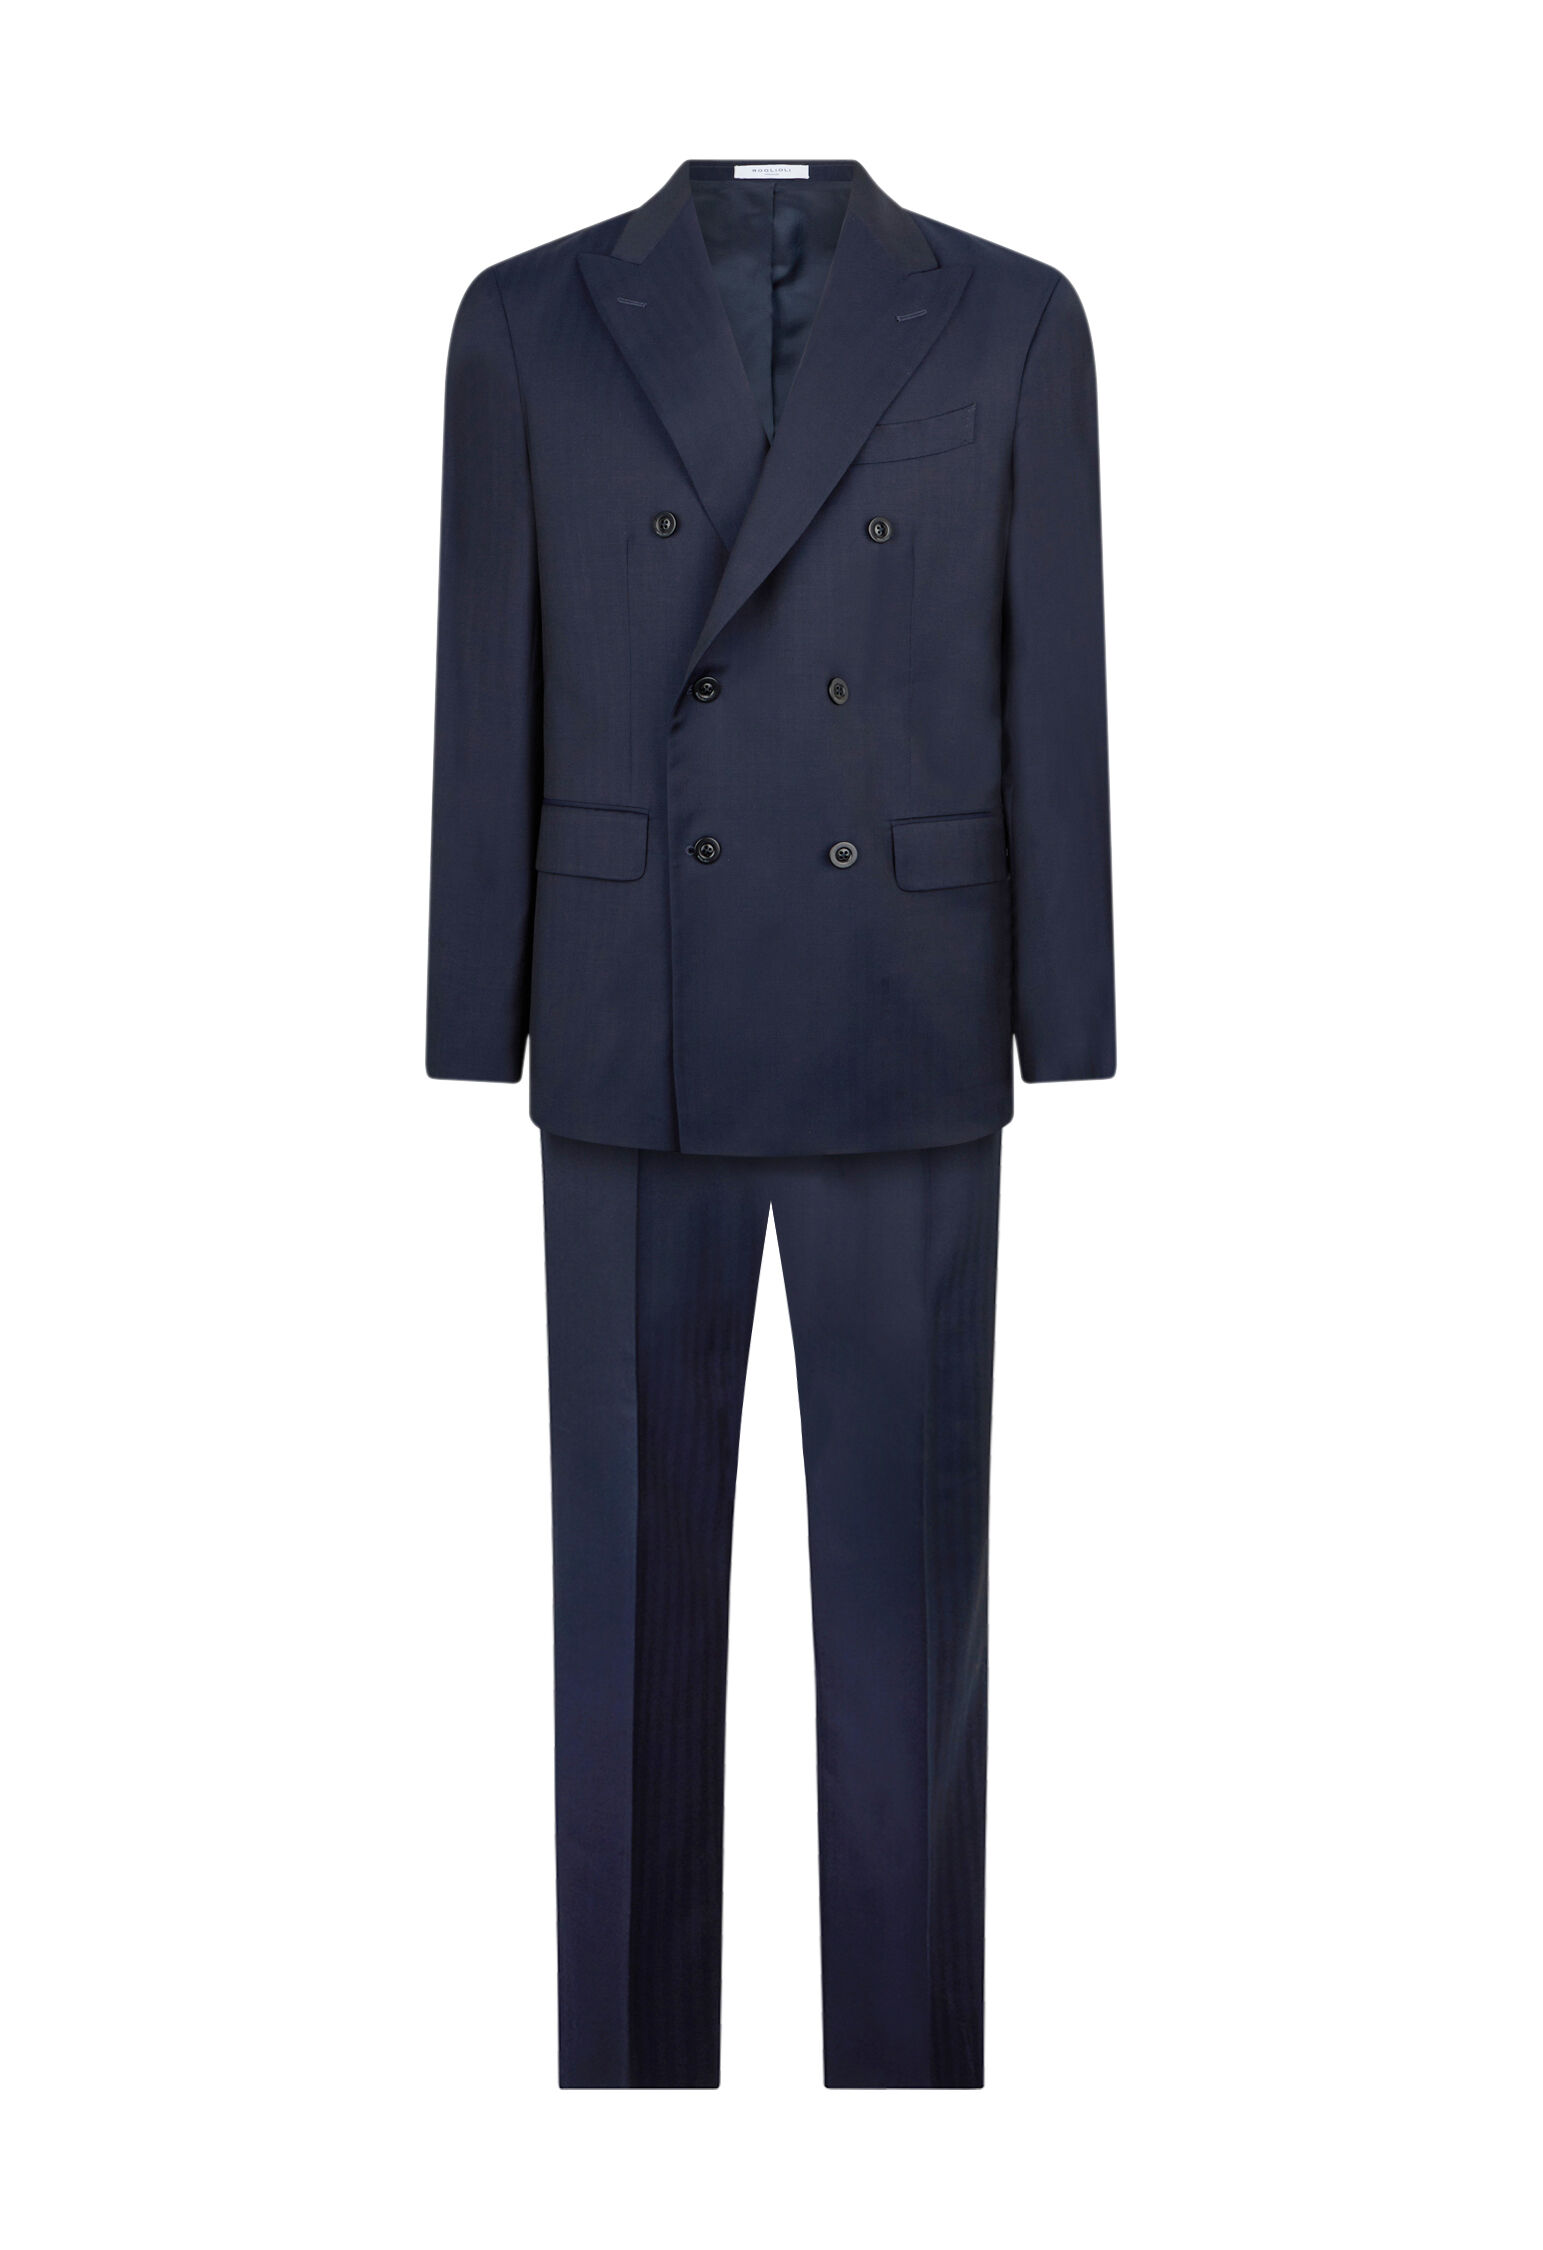 Business Suits for Men & Elegant Tuxedo | Boglioli®